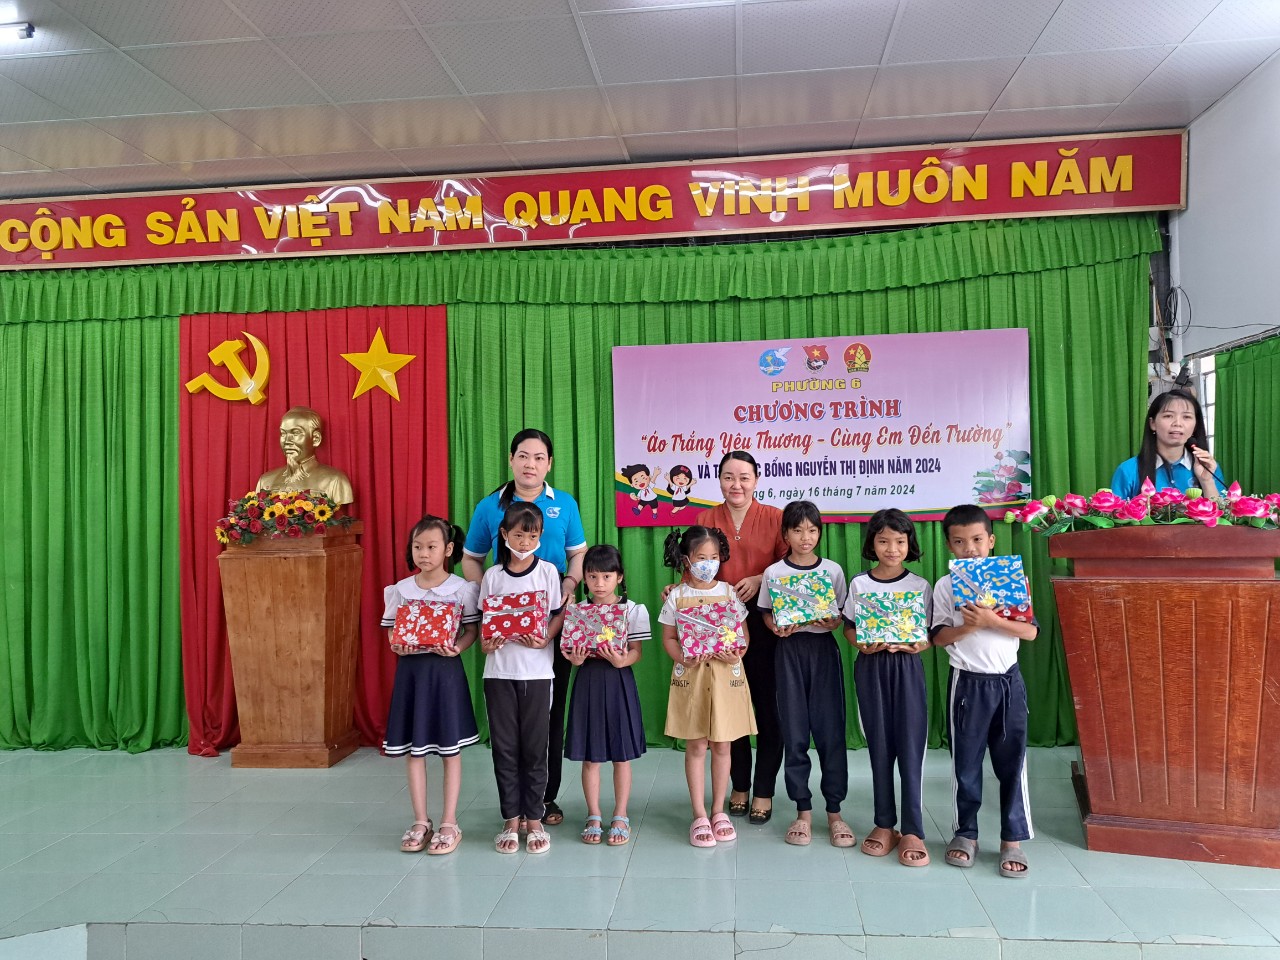 Hội Liên hiệp Phụ nữ Phường 6 phối hợp với đoàn phường tổ chức chương trình áo trắng yêu thương cùng em đến trường và trao học bổng Nguyễn Thị Định  năm 2024